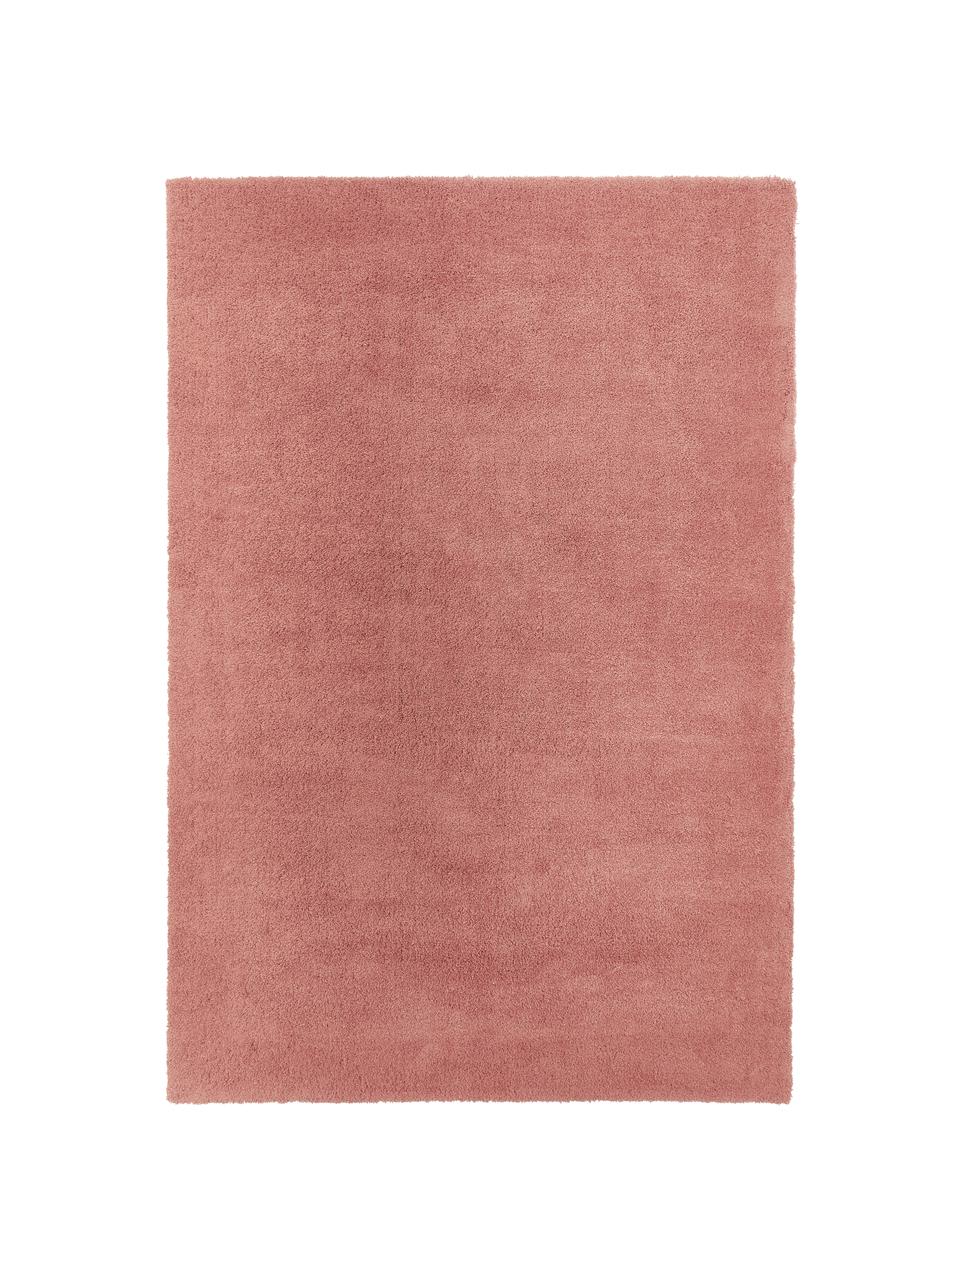 Puszysty dywan z wysokim stosem Leighton, Terakota, S 200 x D 300 cm (Rozmiar L)